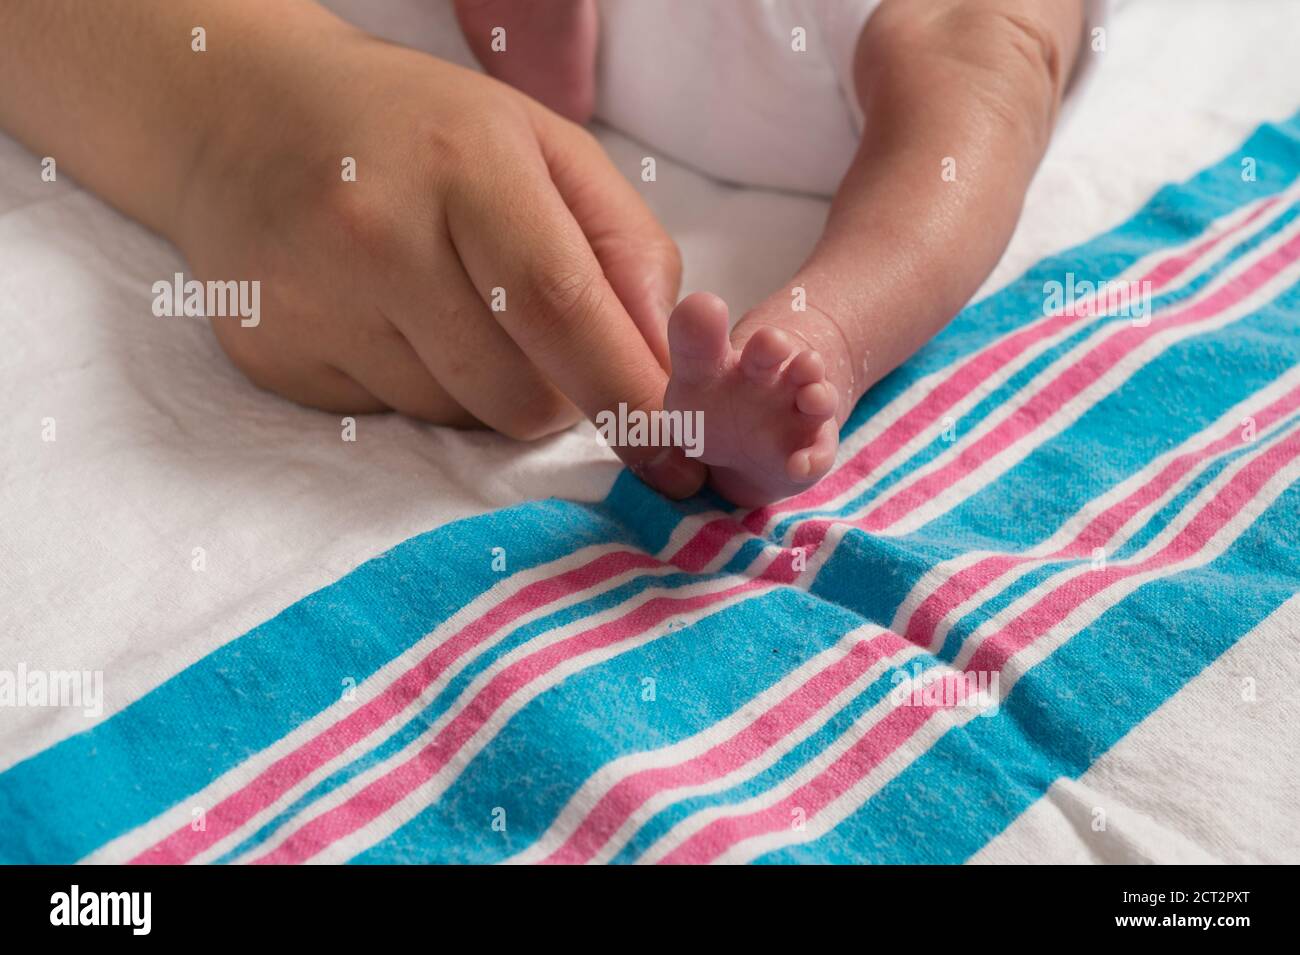 10 jour nouveau-né bébé fille gros plan du réflexe de pied Babinski main adulte touchant le côté du pied causant les orteils à sortie ventilateur Banque D'Images